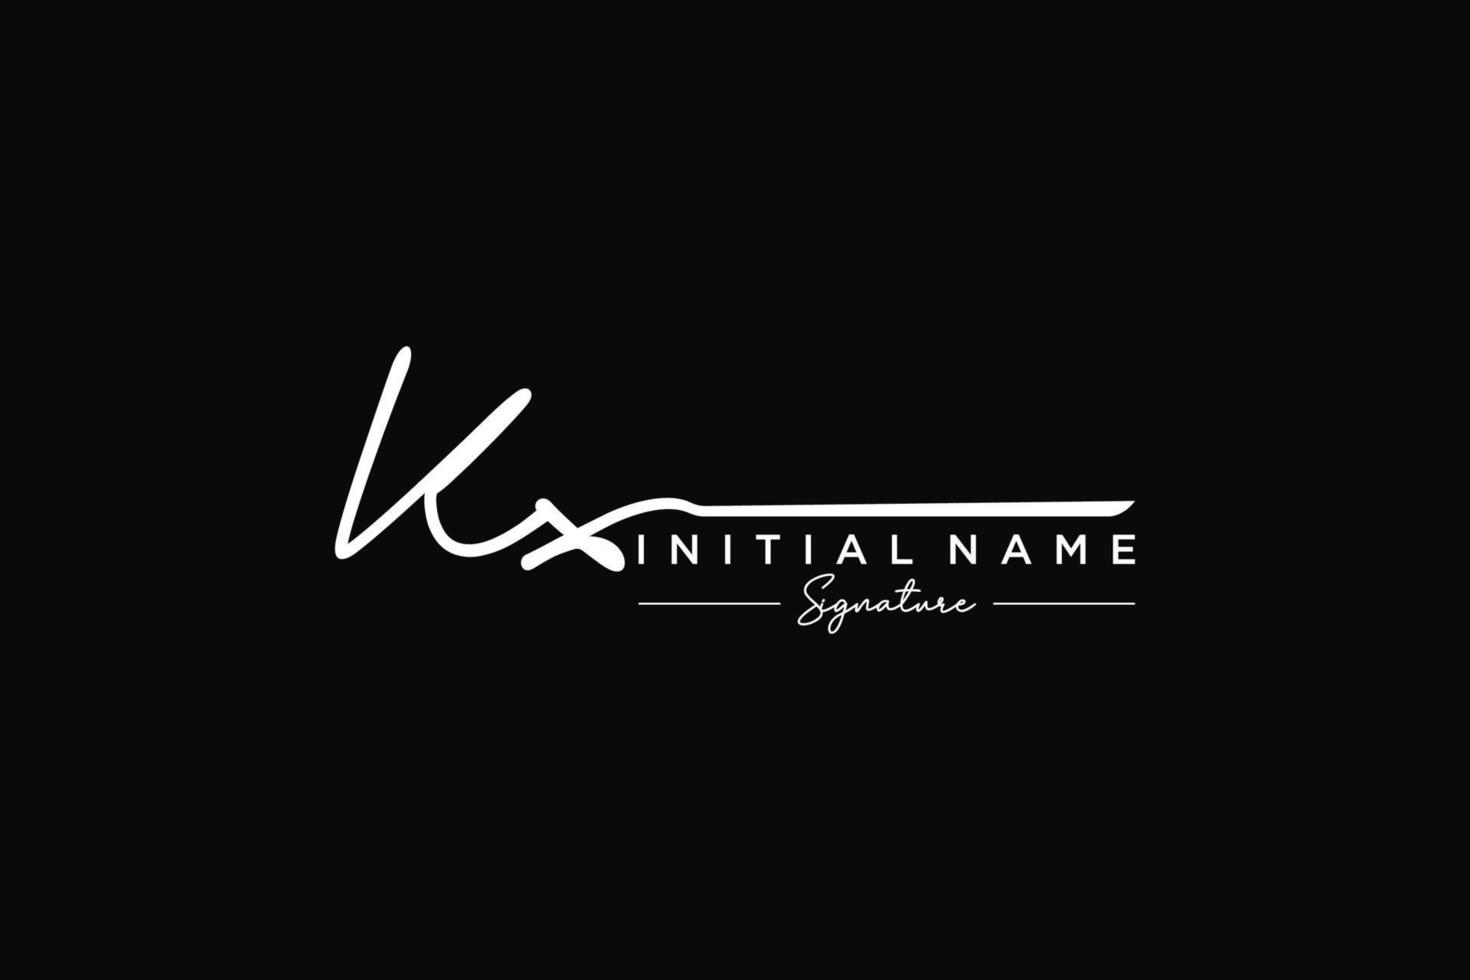 vector de plantilla de logotipo de firma kx inicial. ilustración de vector de letras de caligrafía dibujada a mano.